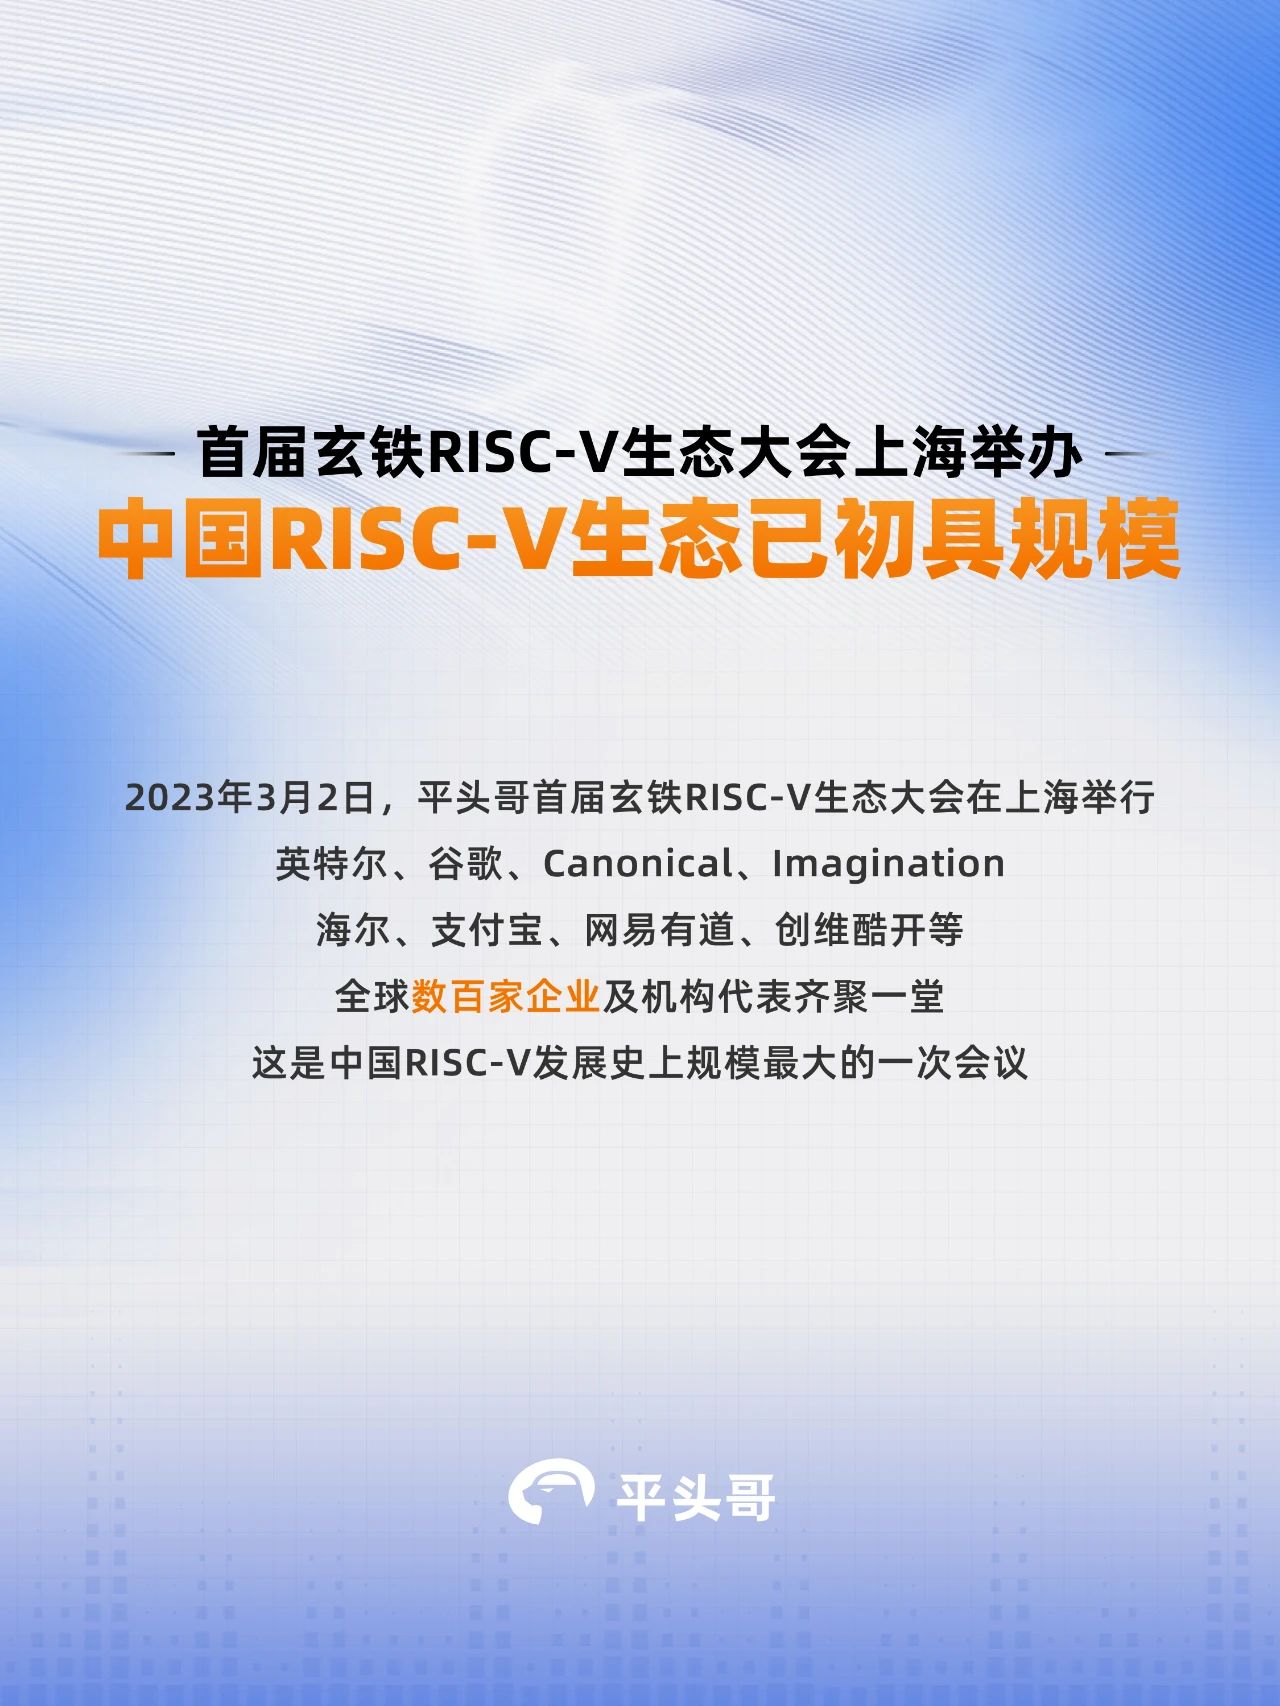 今天，由阿里巴巴平头哥举办的「首届玄铁RISC-V生态大会」在上海举行。